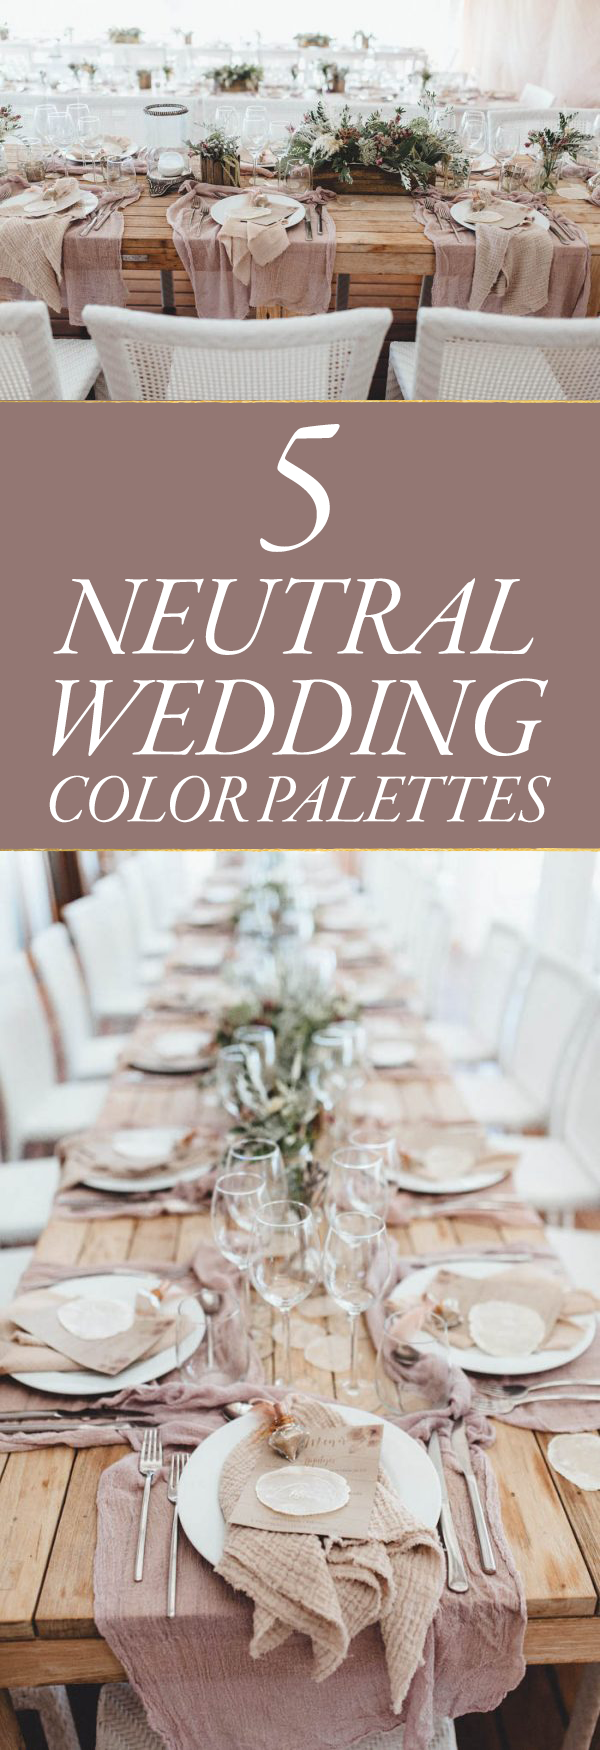 neutral-wedding-color-palettes